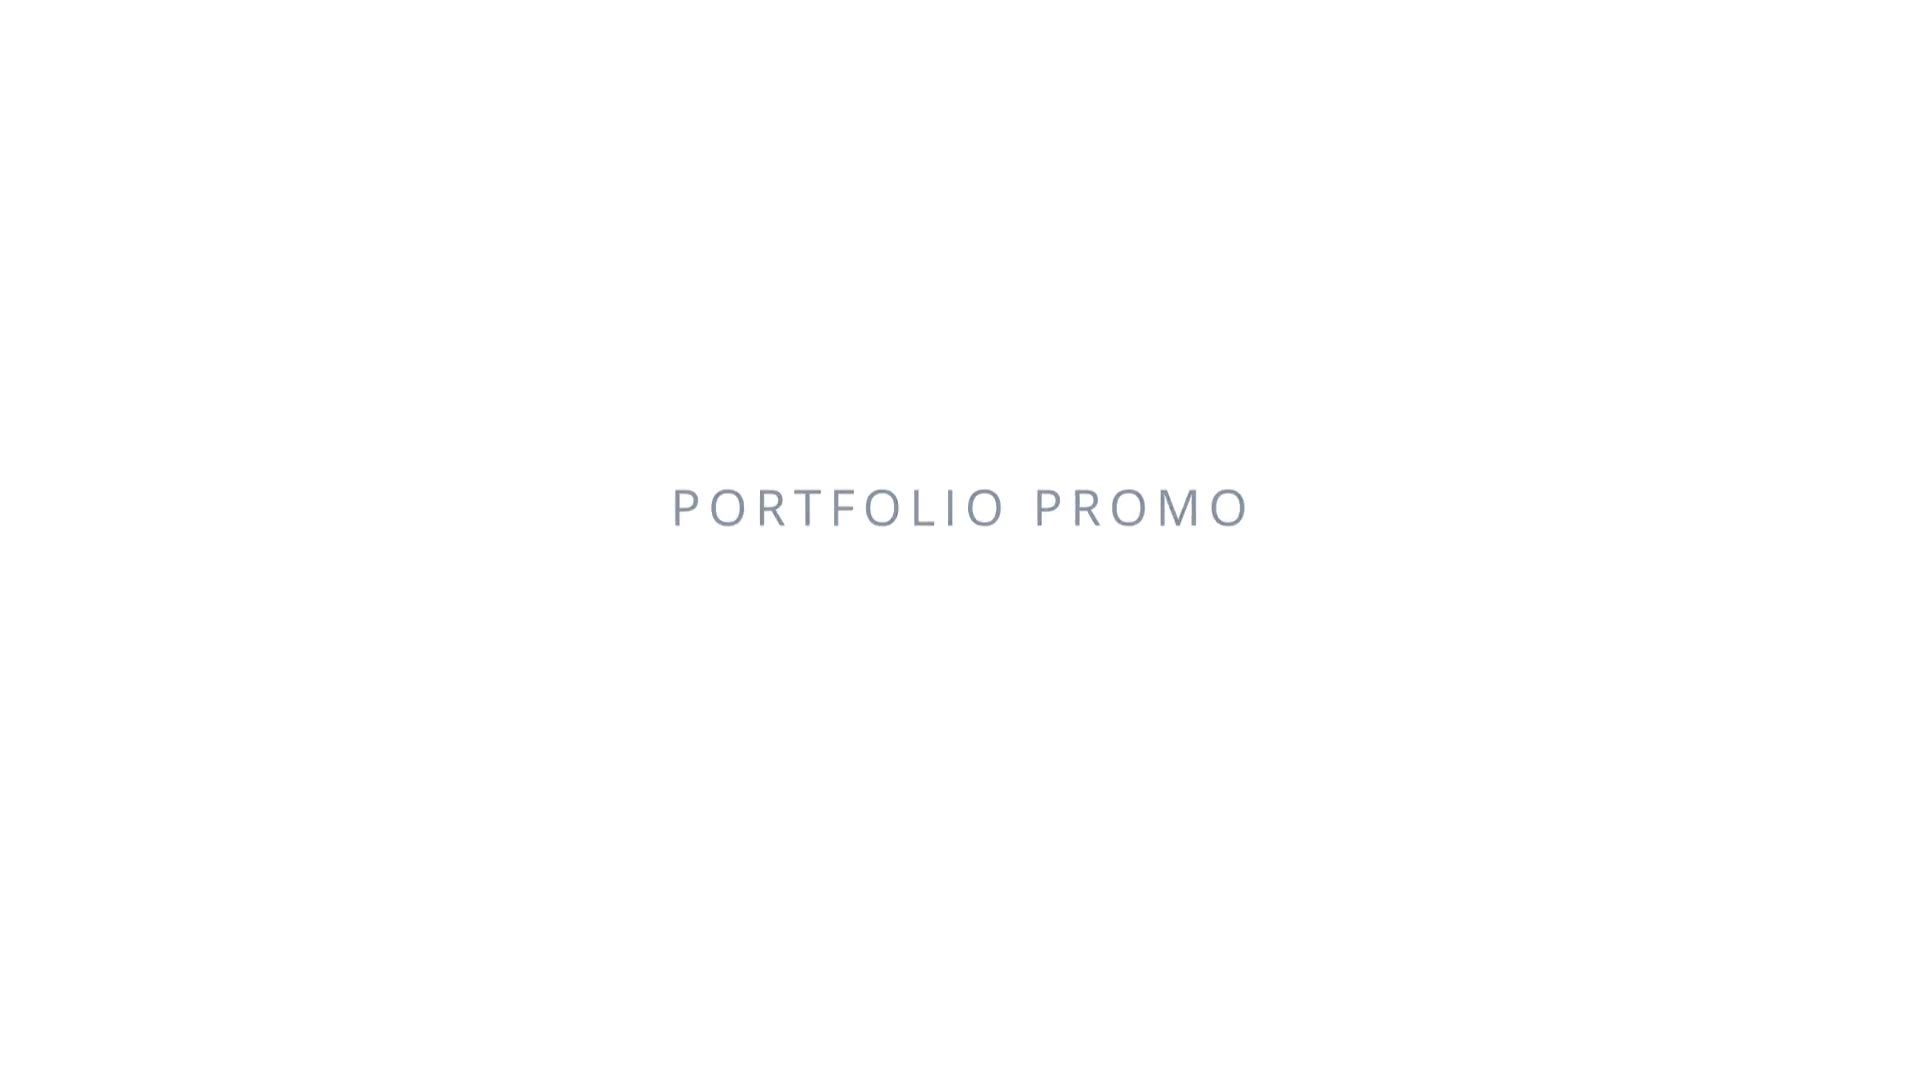 Portfolio Promo II - Download Videohive 22806072